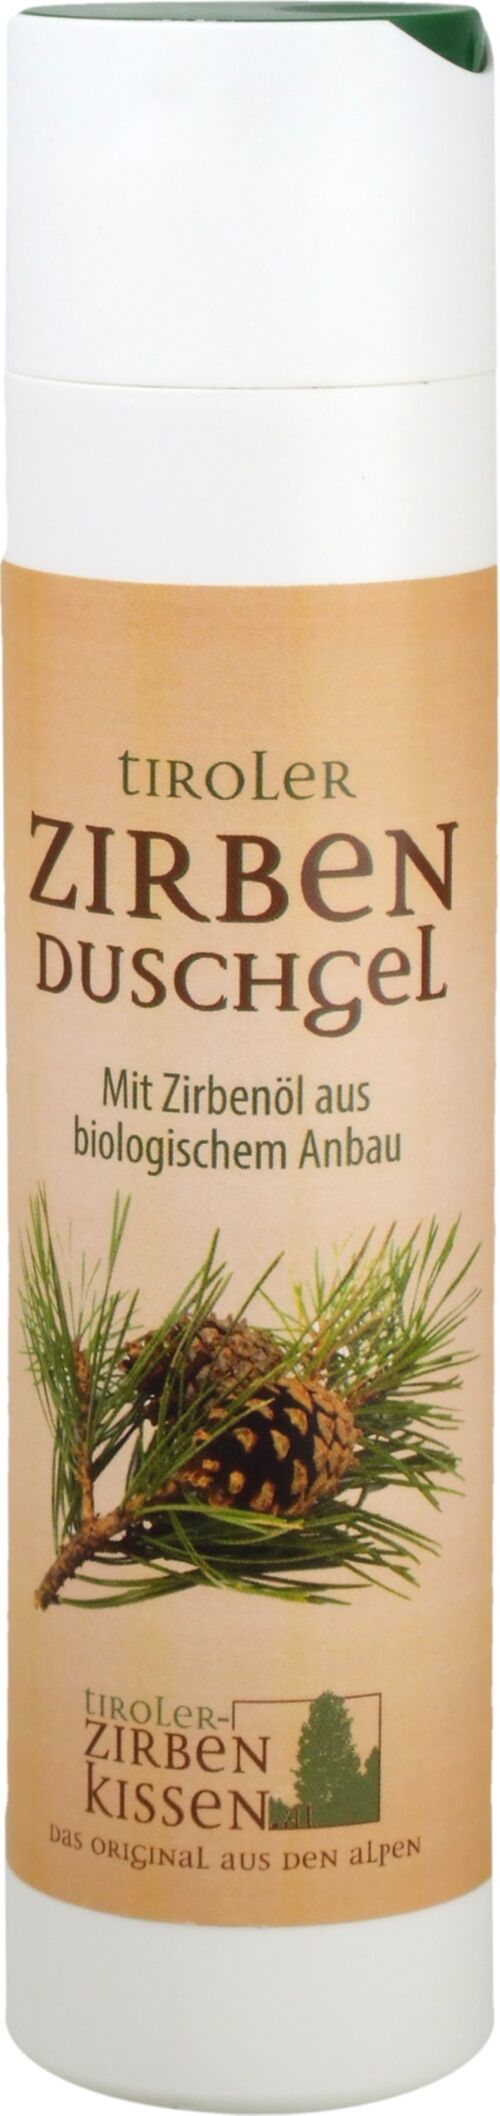 Tiroler Zirben-Duschgel, 250ml